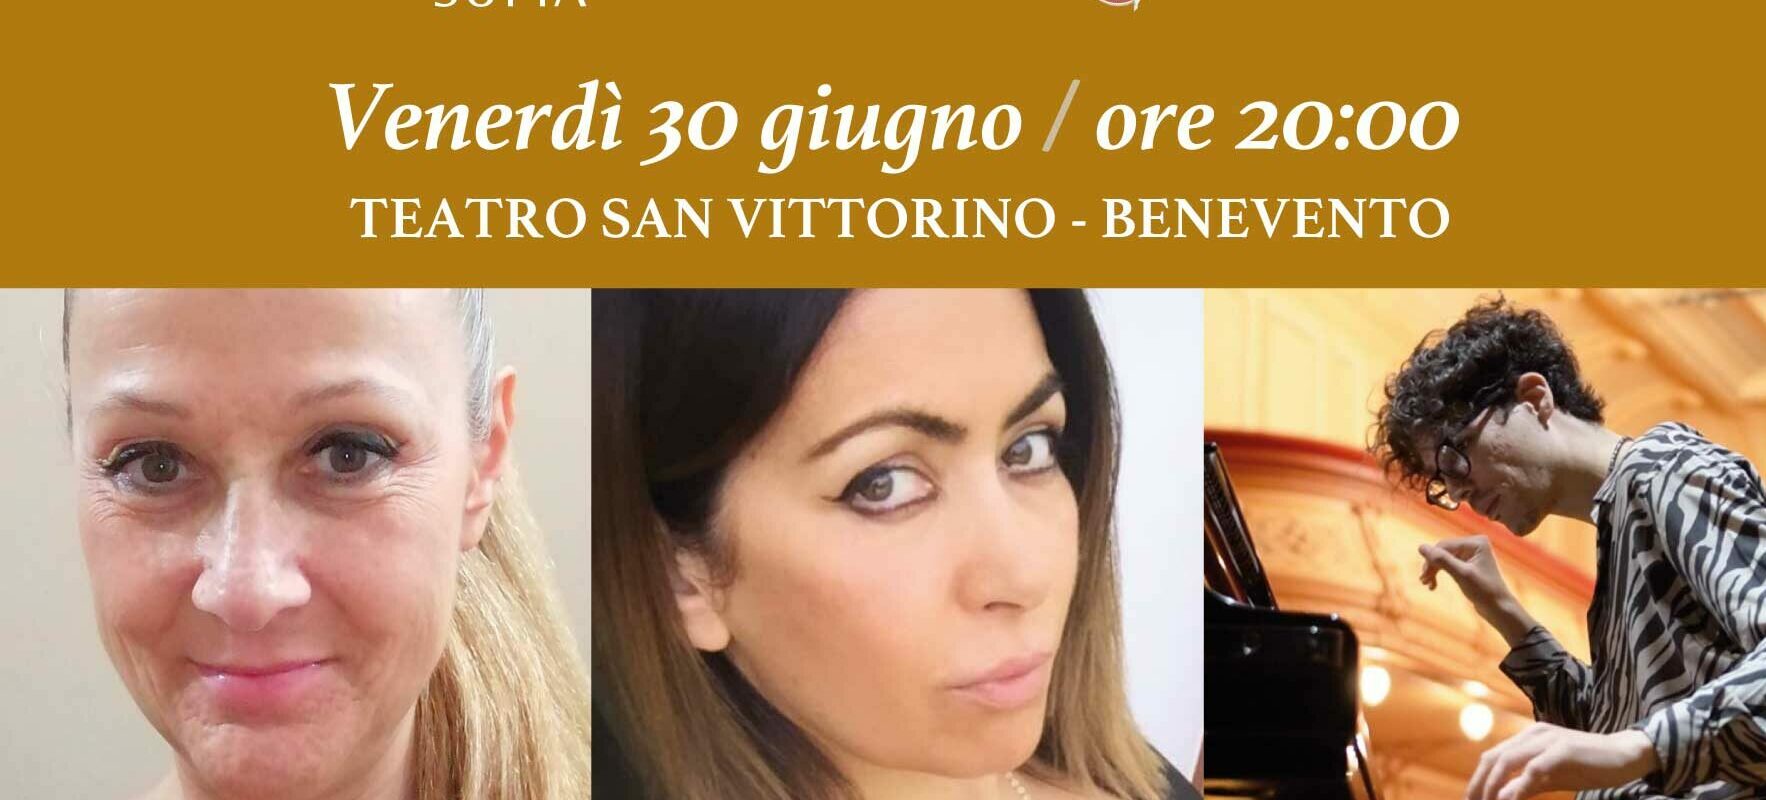 “Concerto Notturno, Chopin- Una Storia d’Amore”: venerdì 30 giugno al San Vittorino